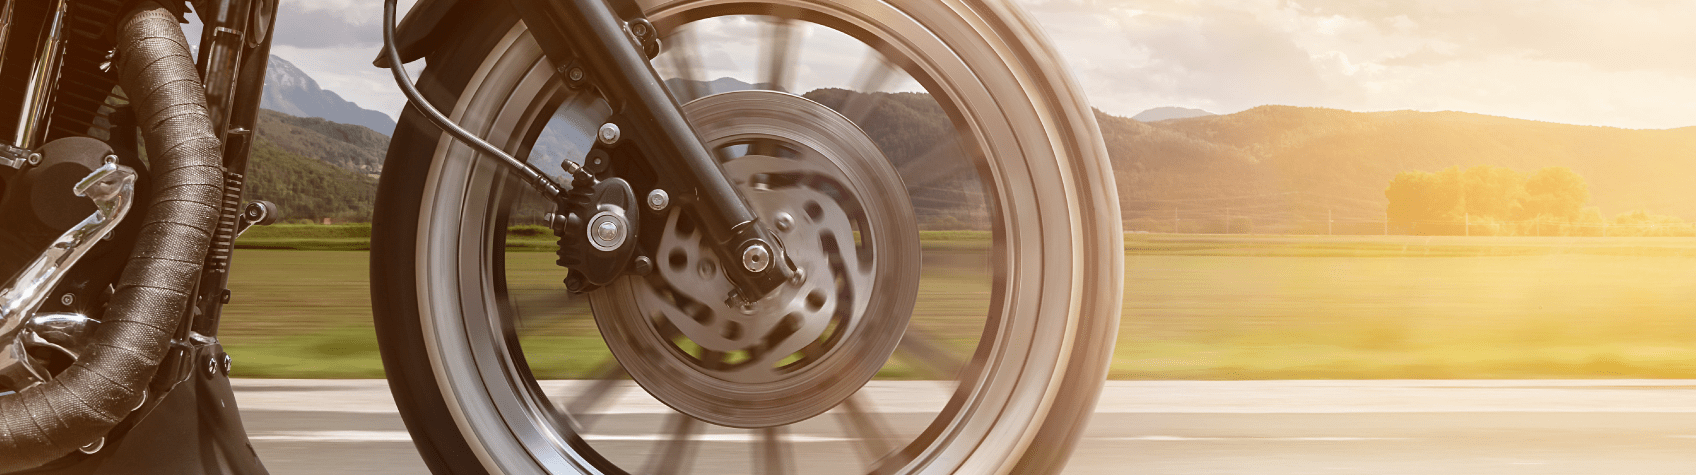 Guía básica de recomendaciones para mantener el desempeño y el rendimiento de tu motocicleta.